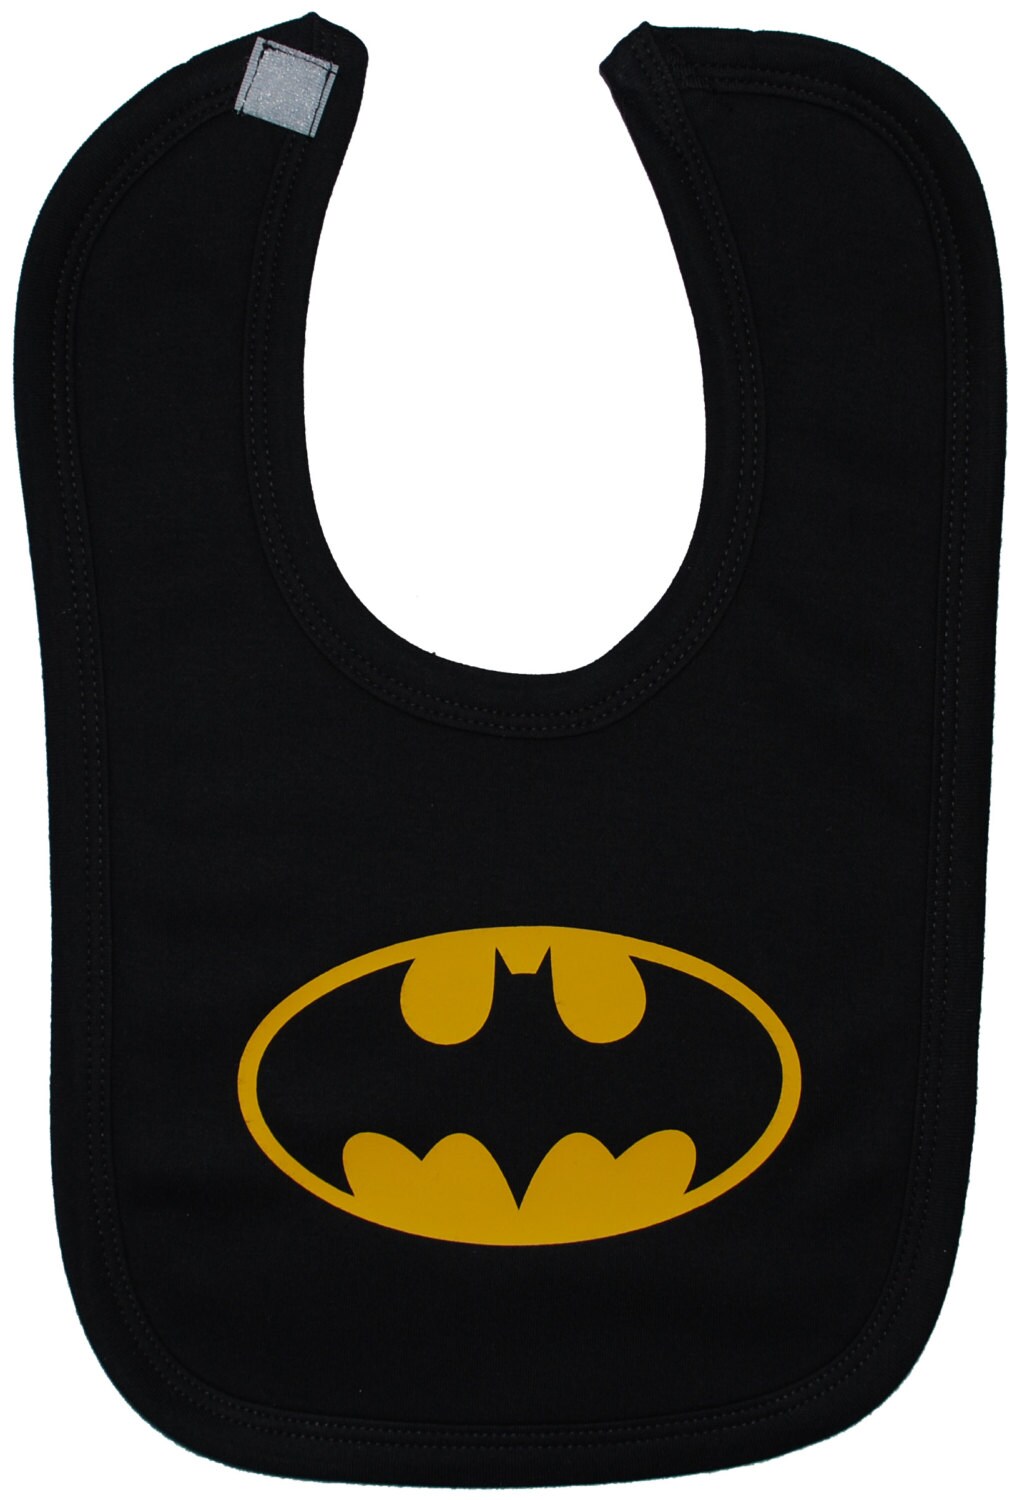 Bat Baby Feeding Bib Newborn-3y Approx Batman Boy Girl Gift Touch Fastener Black 